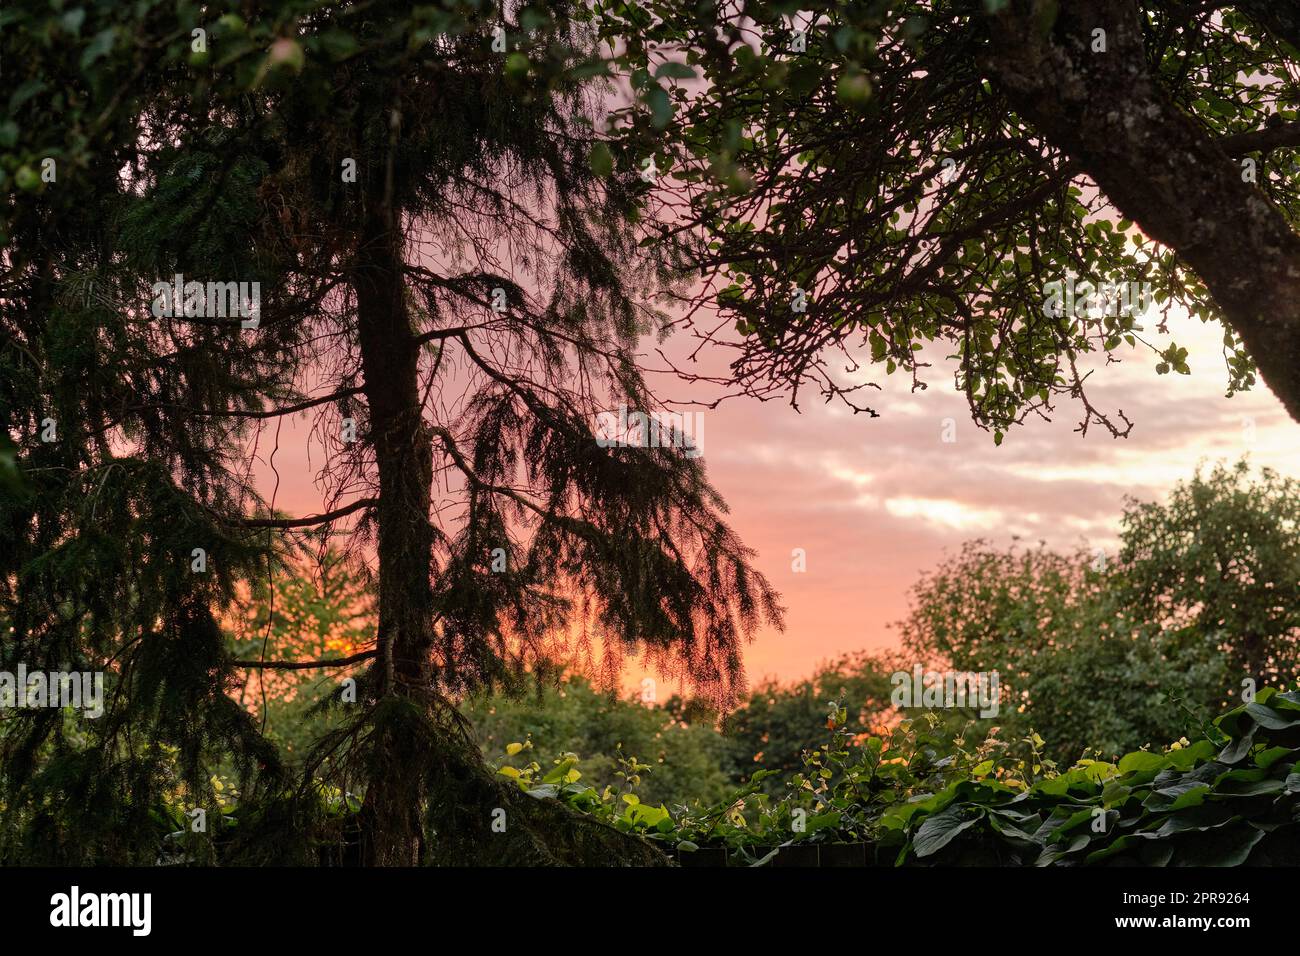 Vue imprenable sur un coucher de soleil dans la jungle dans une nature verdoyante. Forêt magique avec une végétation luxuriante et des arbres sauvages à l'aube pour copier l'arrière-plan de l'espace. Paysage naturel paisible et calme de forêt mystérieuse Banque D'Images